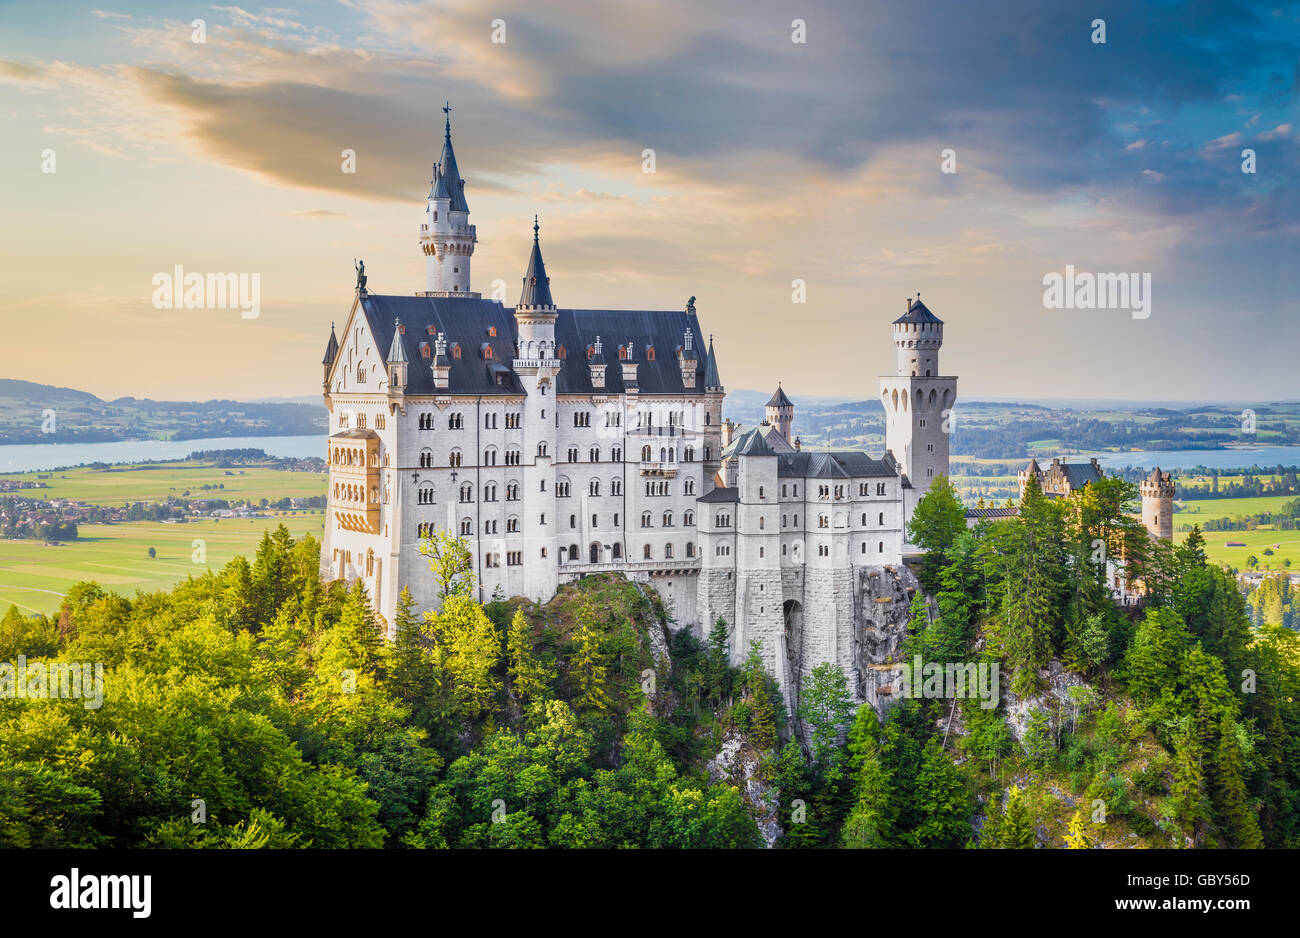 Visualizzazione classica del famoso castello di Neuschwanstein, uno d'Europa più visitato castelli, al tramonto, Baviera, Germania Foto Stock